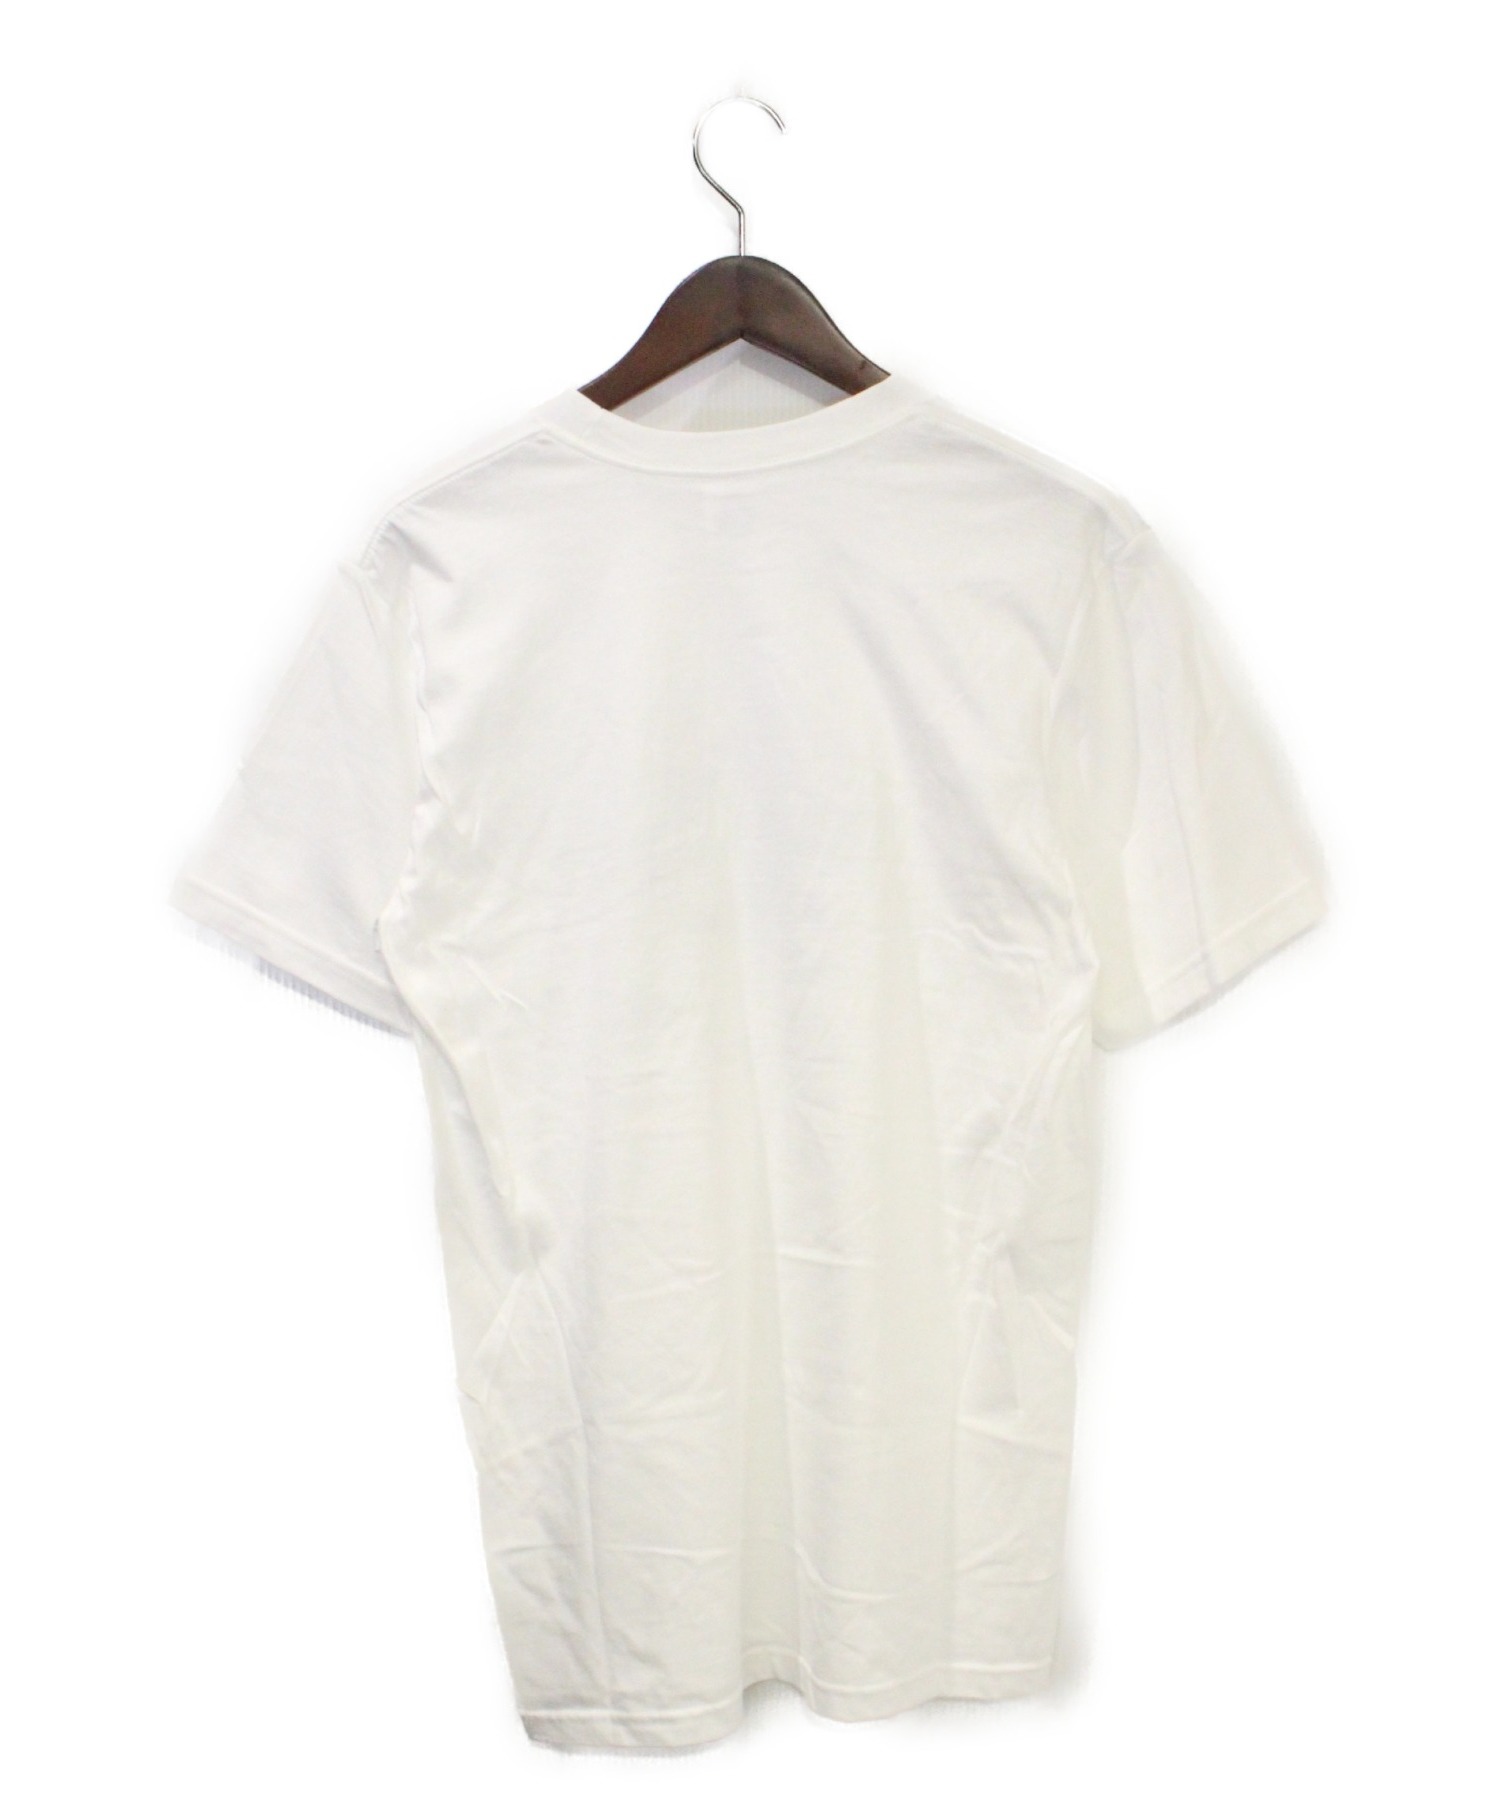 SUPREME×THE NORTH FACE (シュプリーム×ザ・ノースフェイス) Tシャツ ホワイト サイズ:S